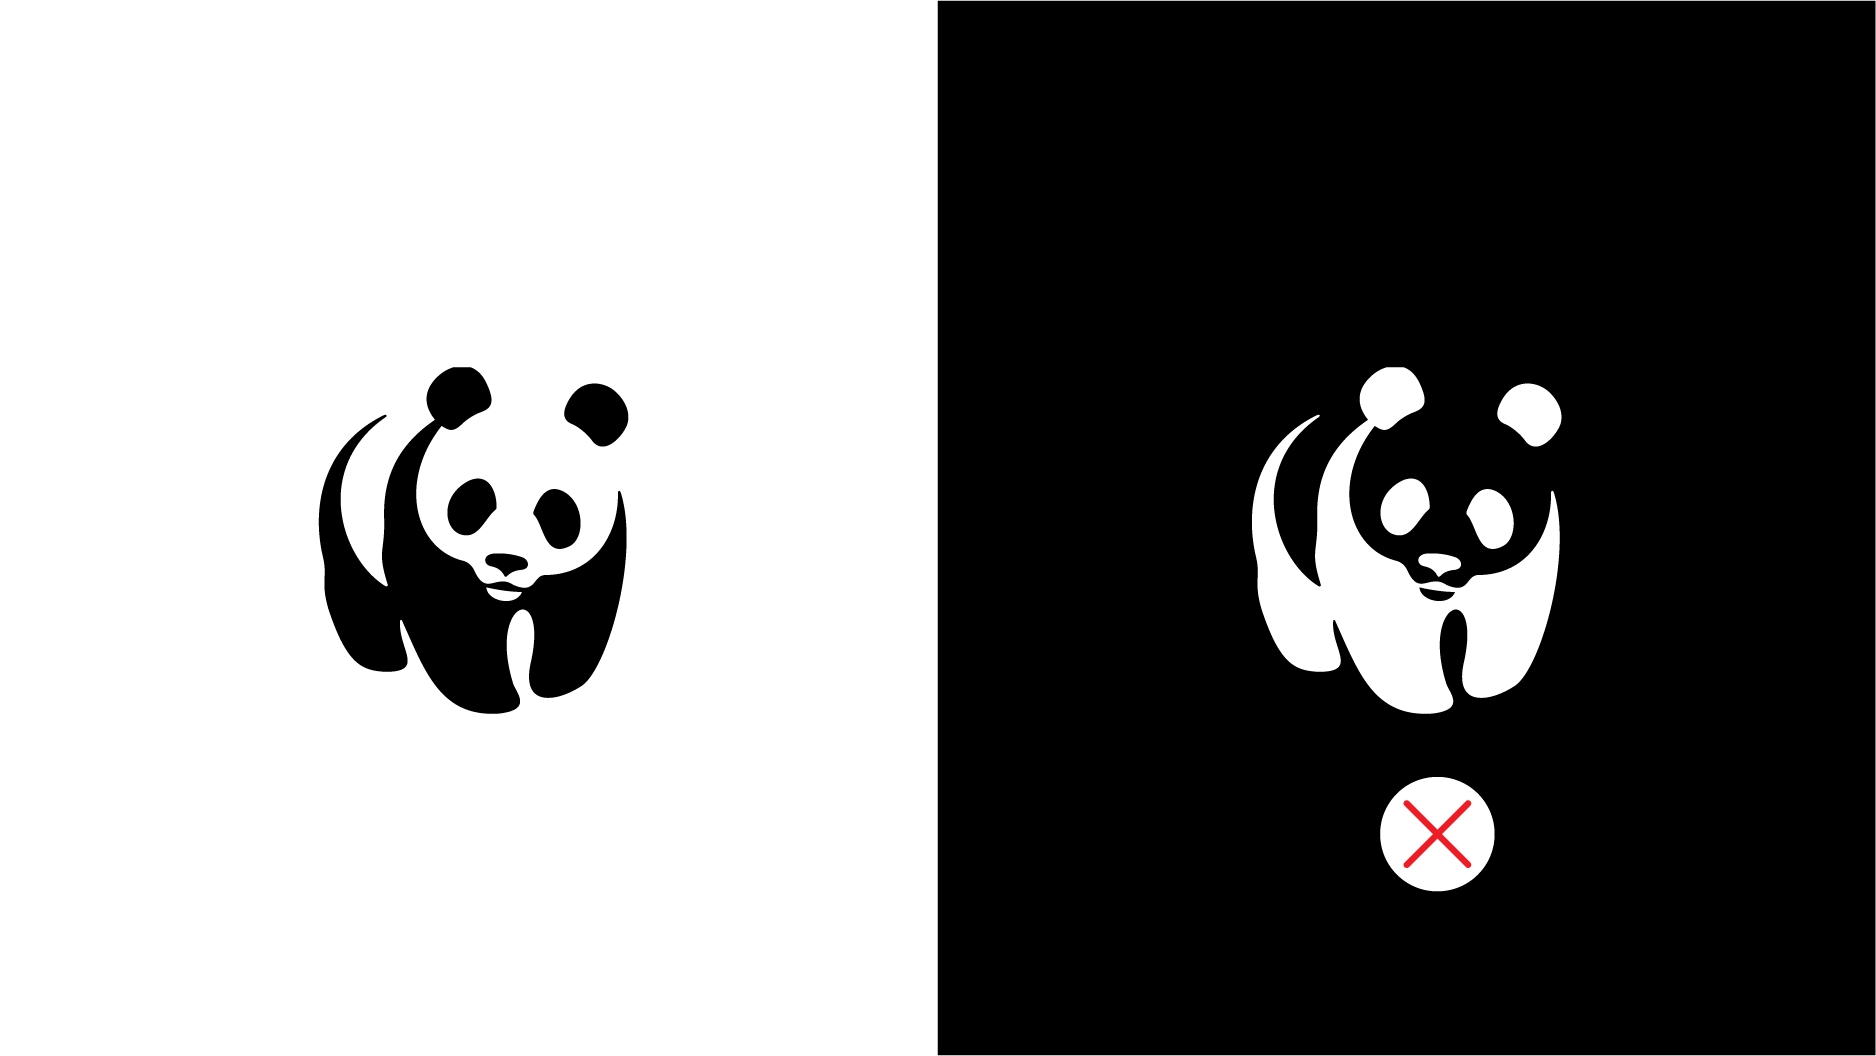 Thiết kế logo WWF đảo ngược màu không đúng sẽ gây nhầm lẫn.